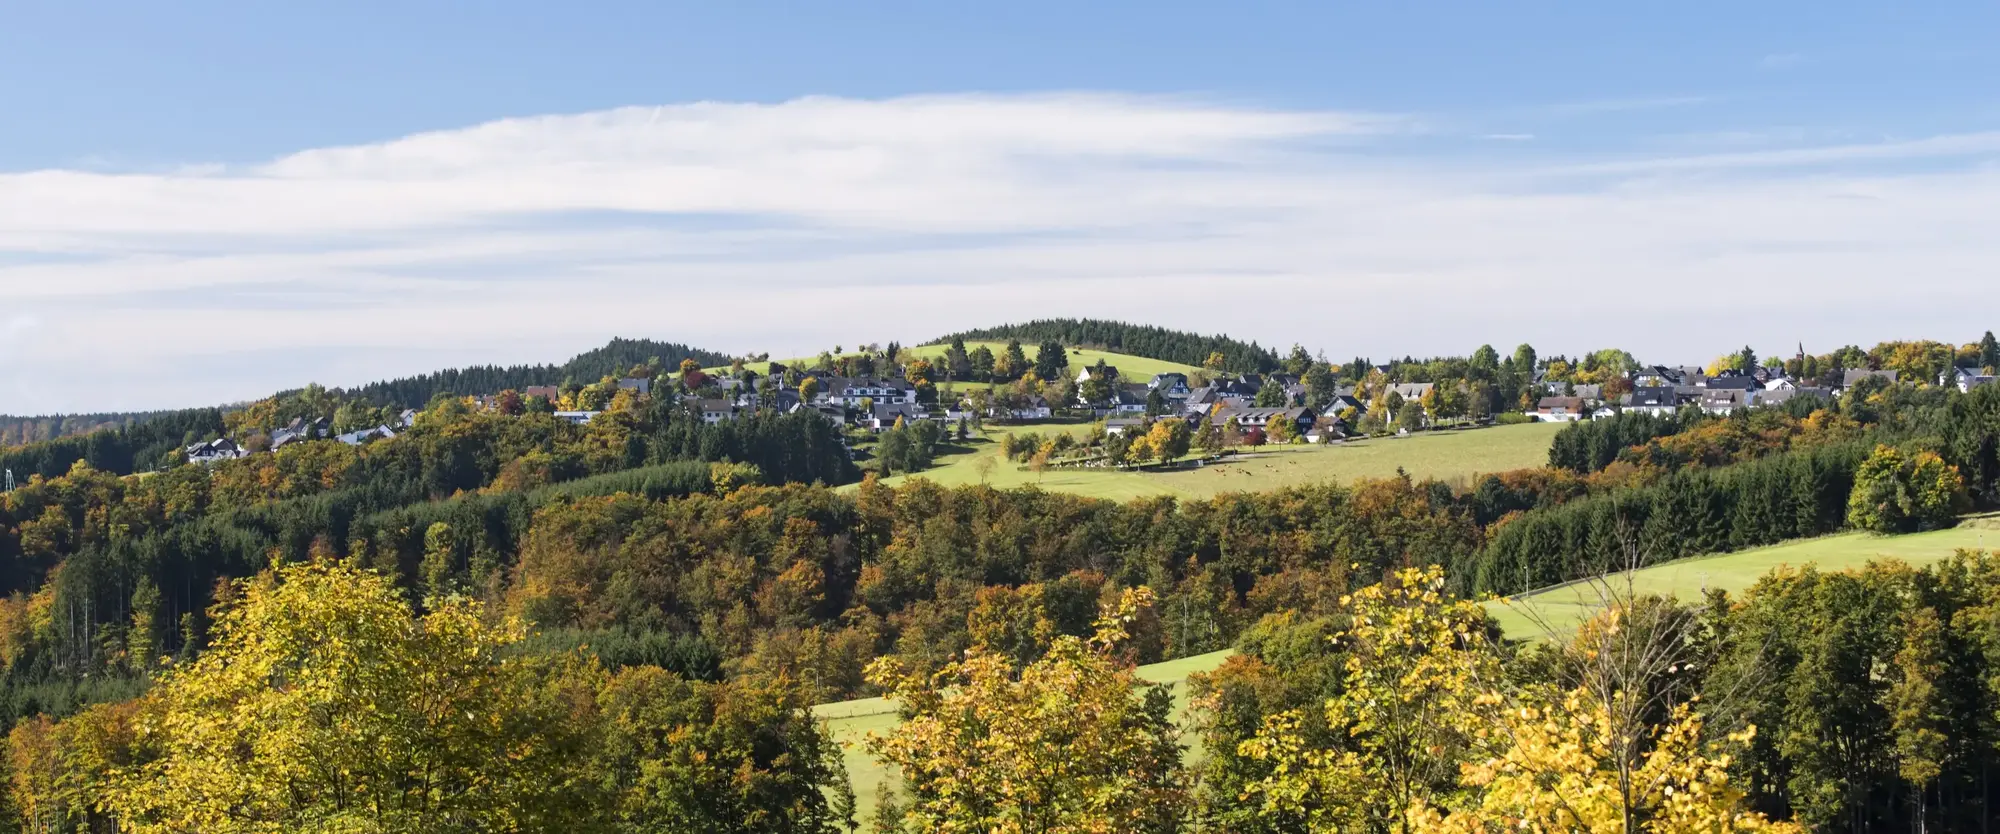 Die Ortschaft Langewiese inmitten von Wiesen, Wäldern und Bergen.